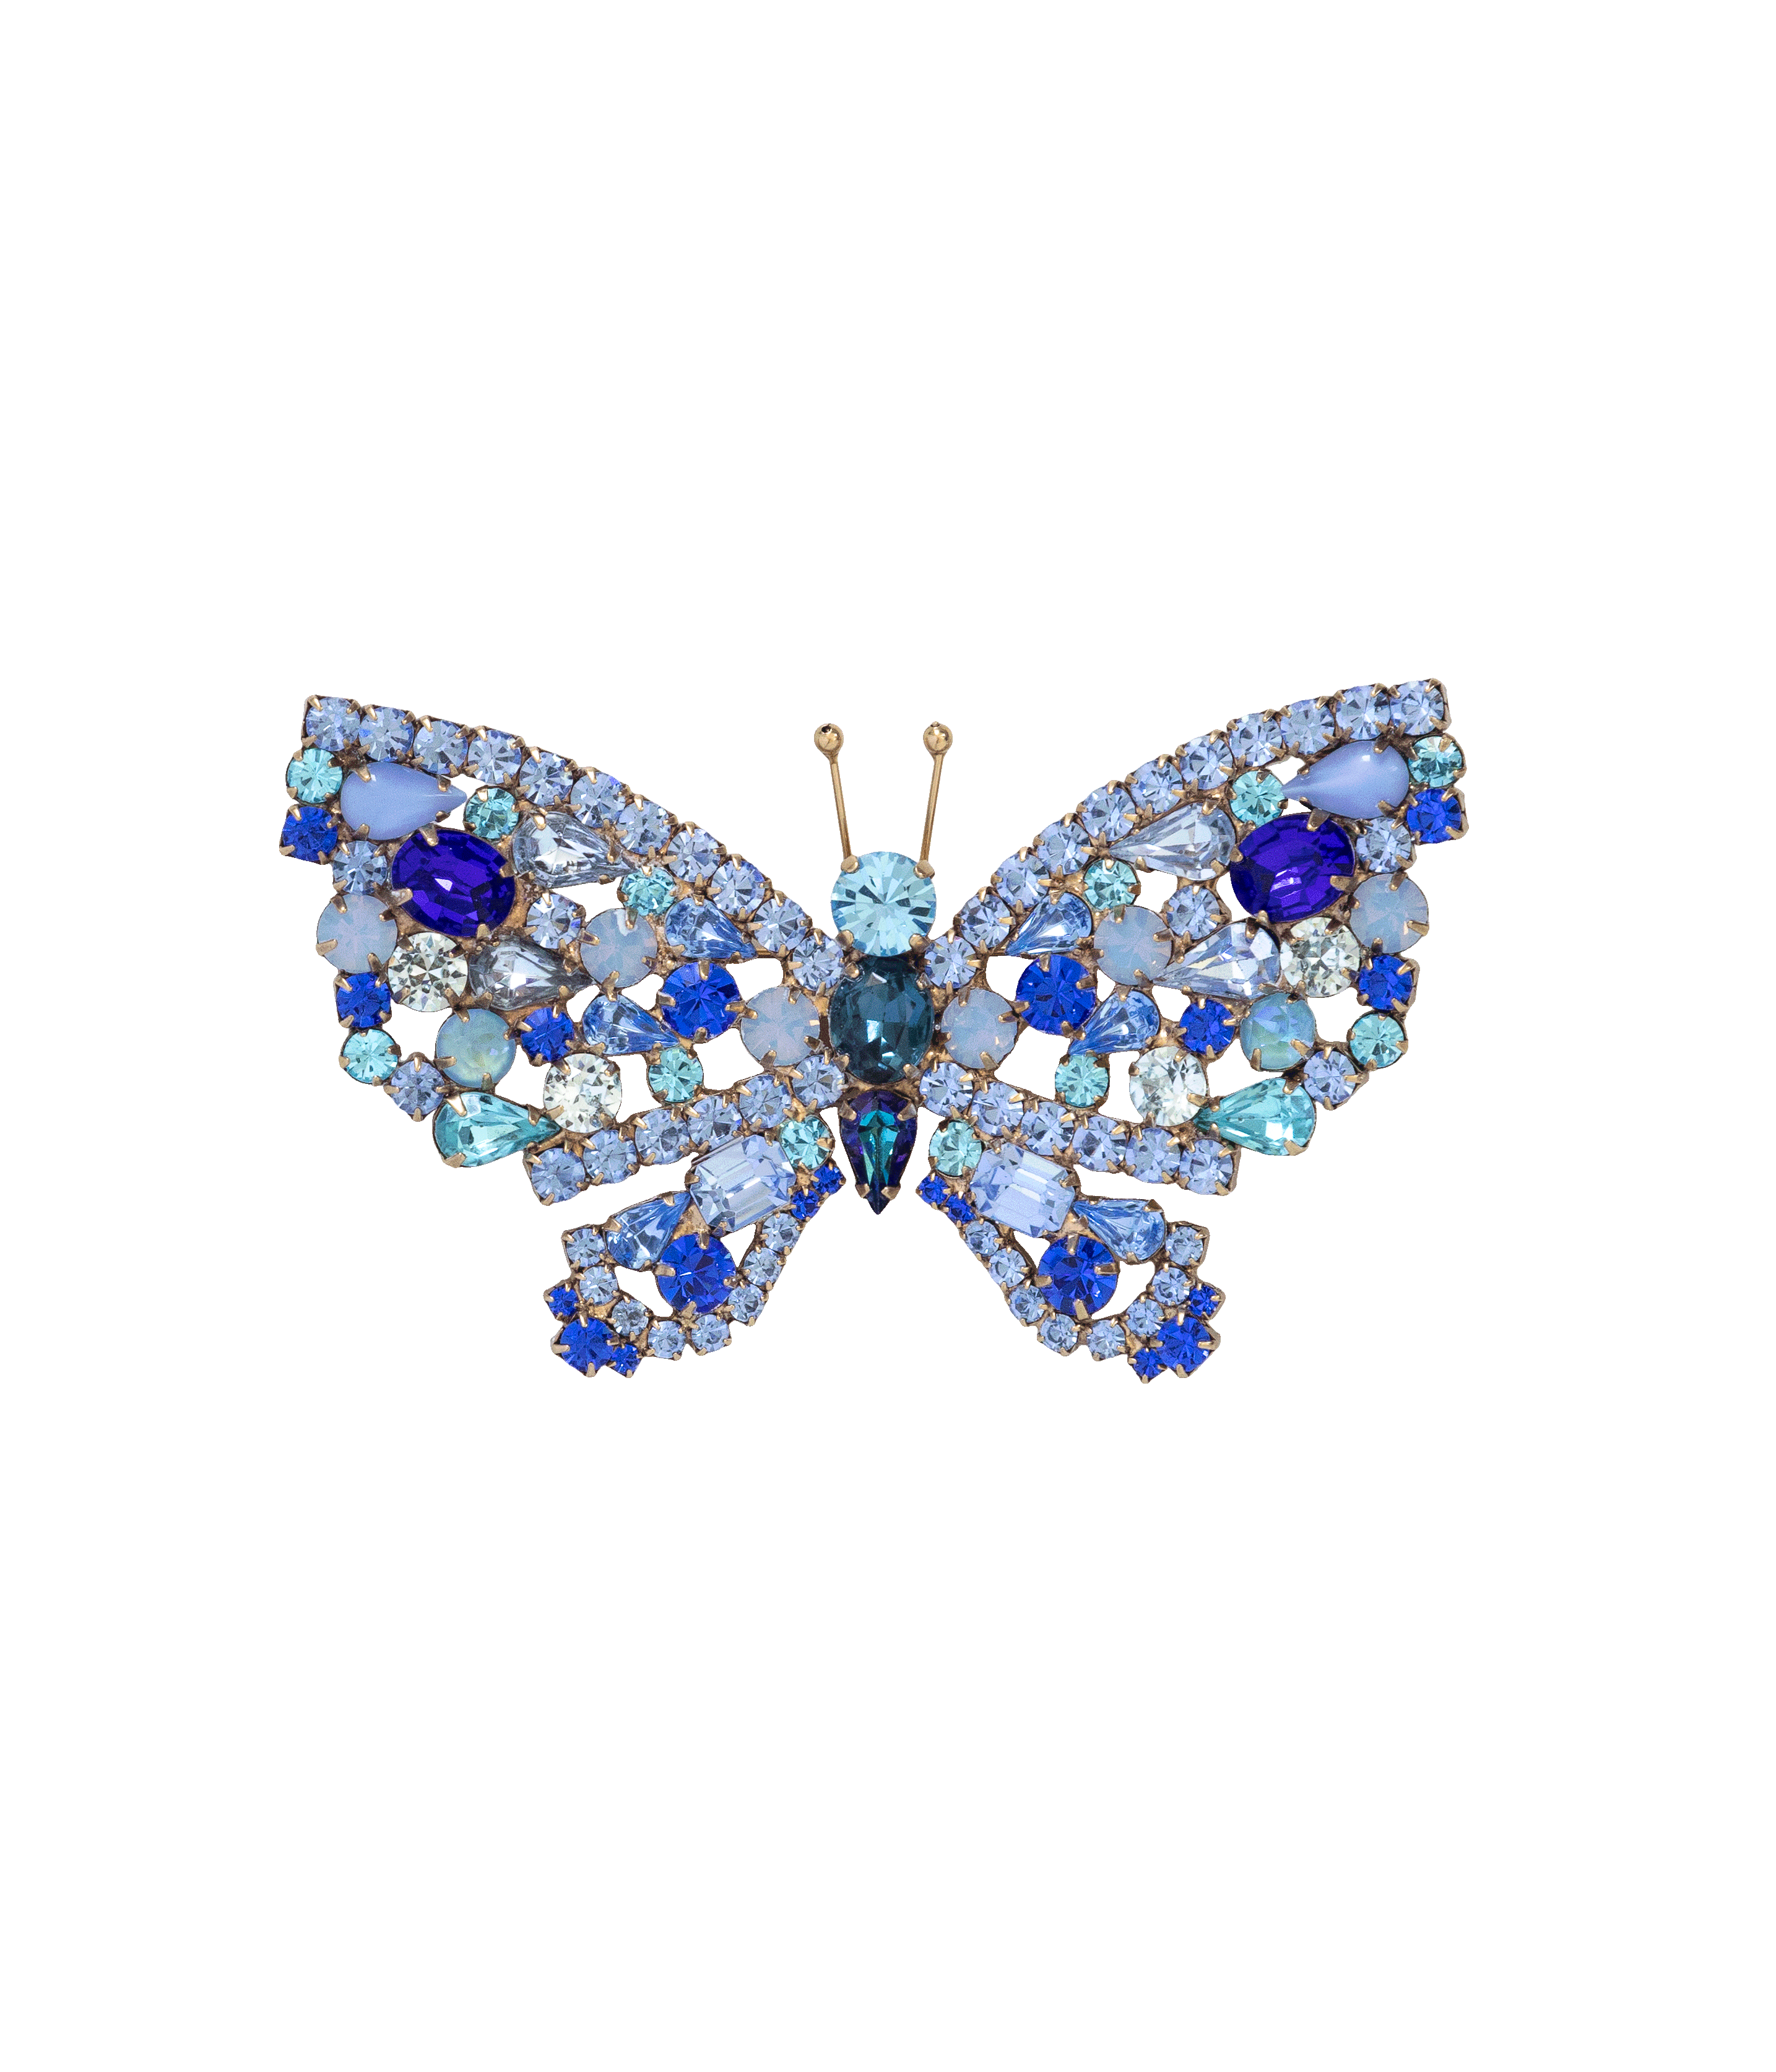 Small Butterfly in Cobalt / Light Sapphire / Aqua